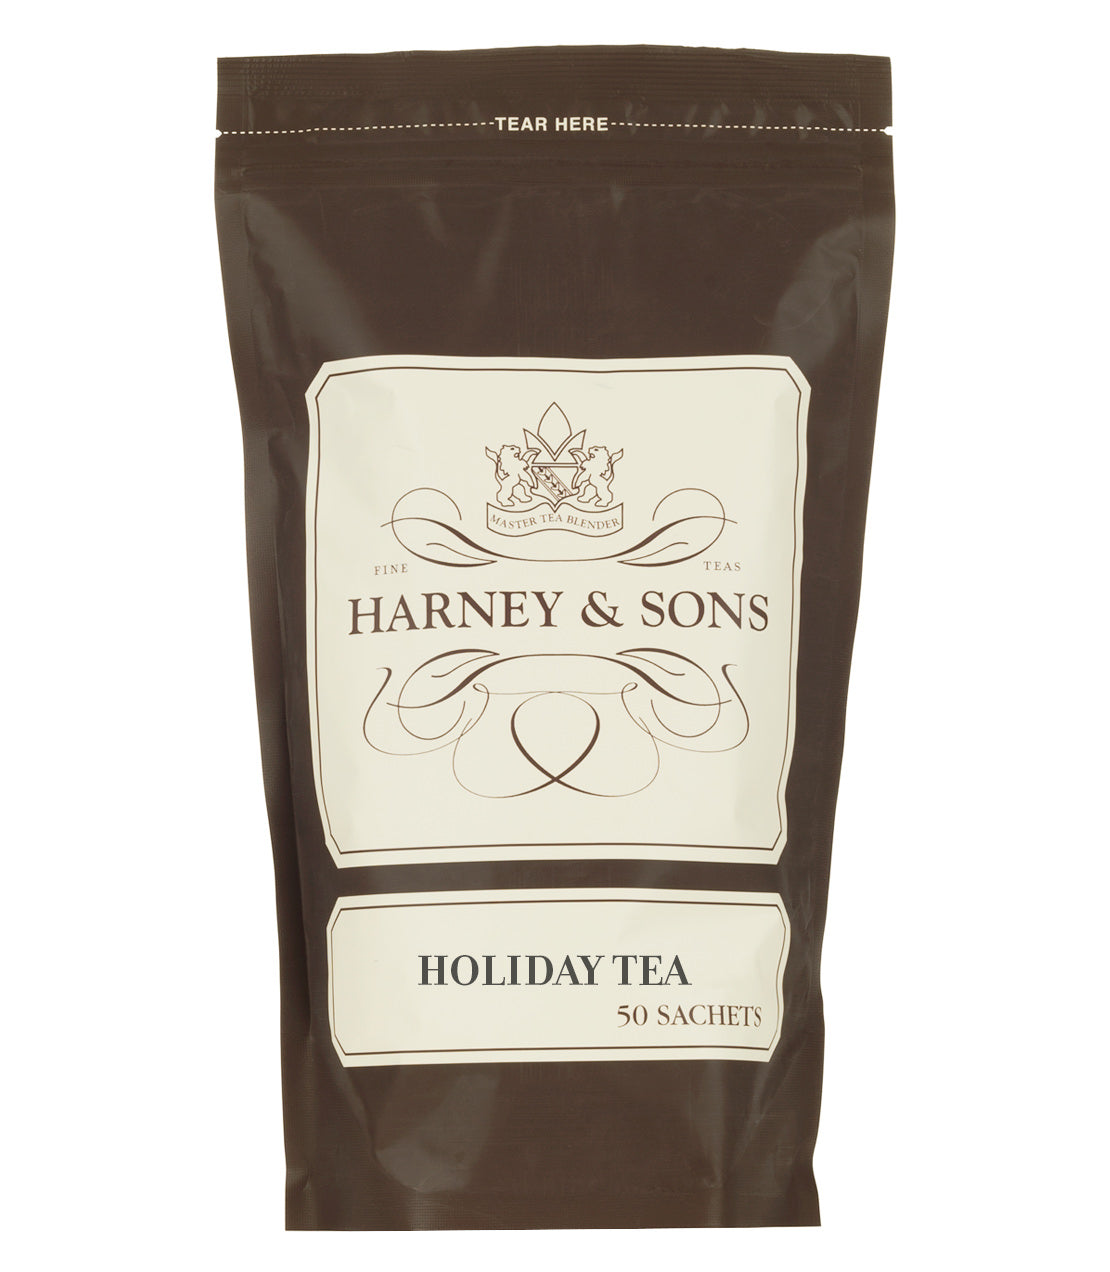 Holiday Tea, Bag of 50 Sachets - Sachets Bag of 50 Sachets - Harney & Sons Fine Teas